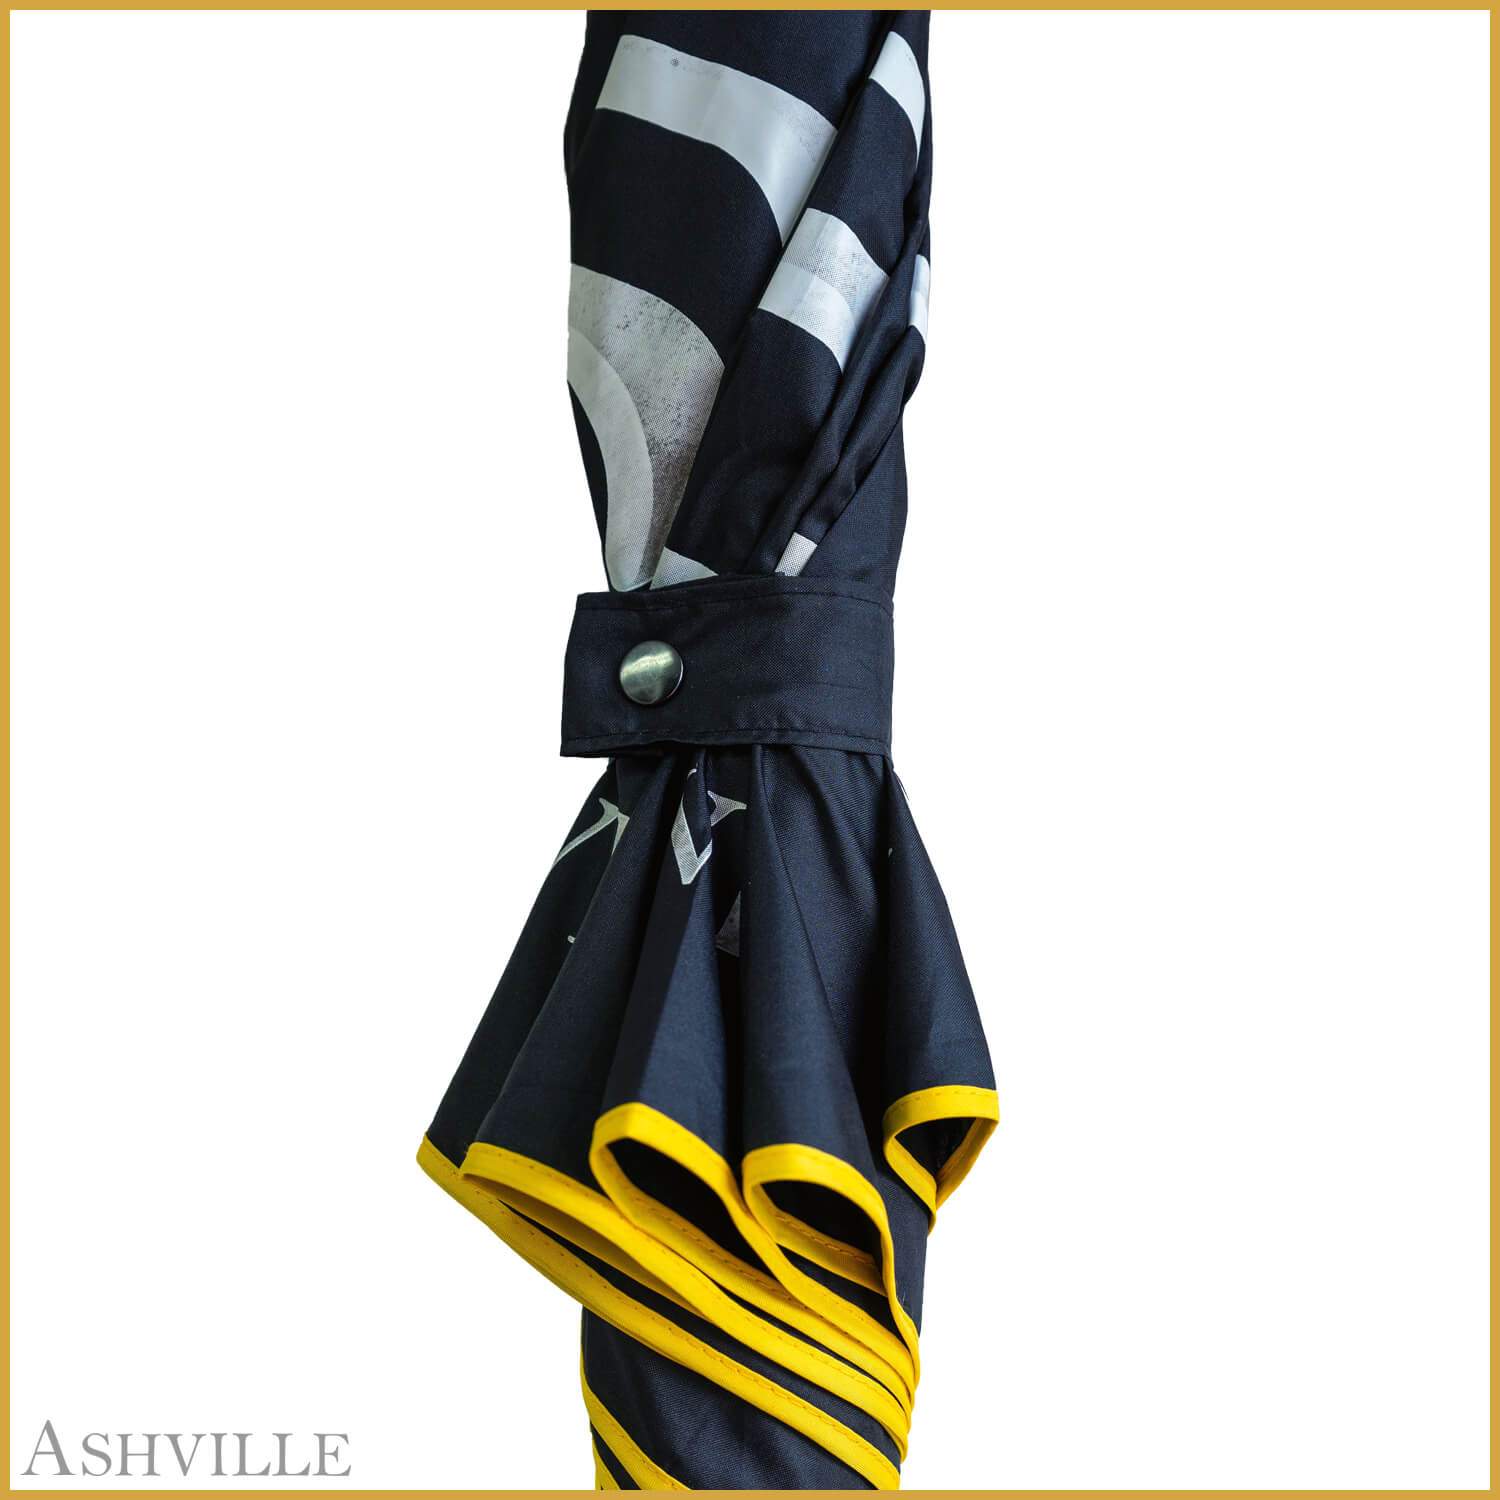 Ashville Executive Umbrella